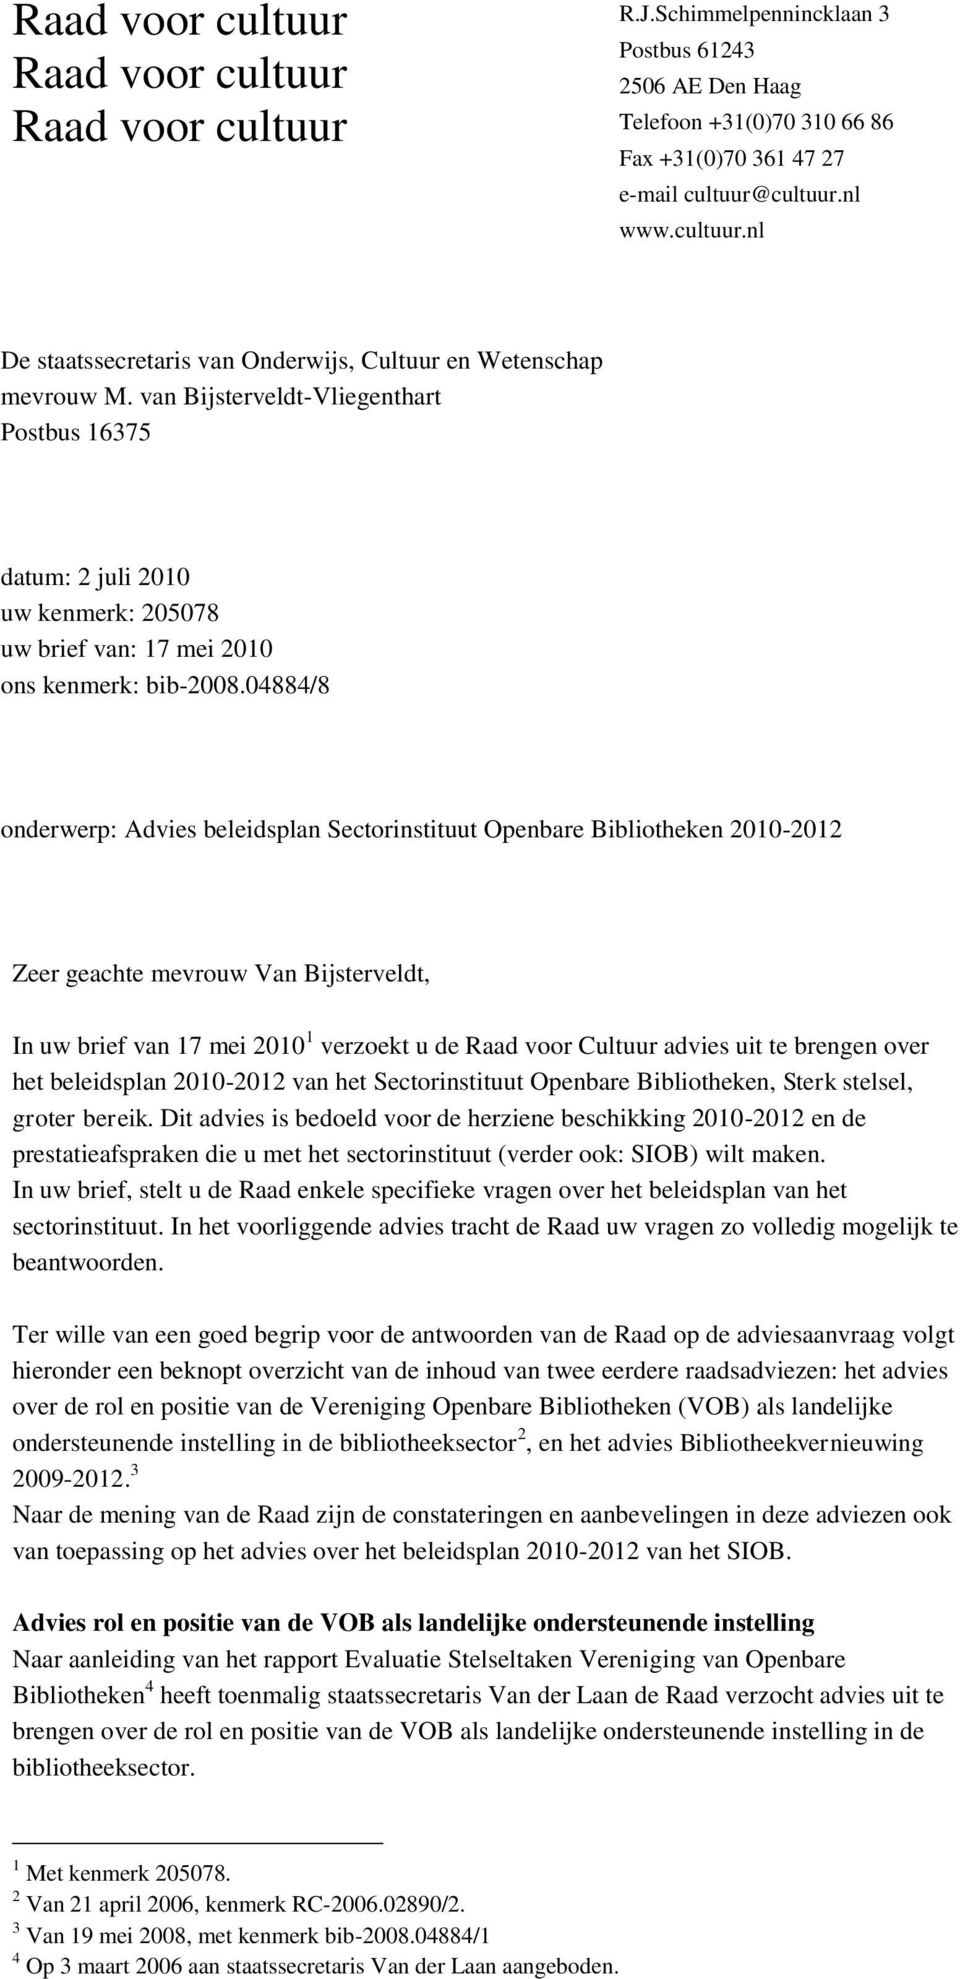 Zeer geachte mevrouw Van Bijsterveldt, In uw brief van 17 mei 2010 1 verzoekt u de Raad voor Cultuur advies uit te brengen over het beleidsplan 2010-2012 van het Sectorinstituut Openbare